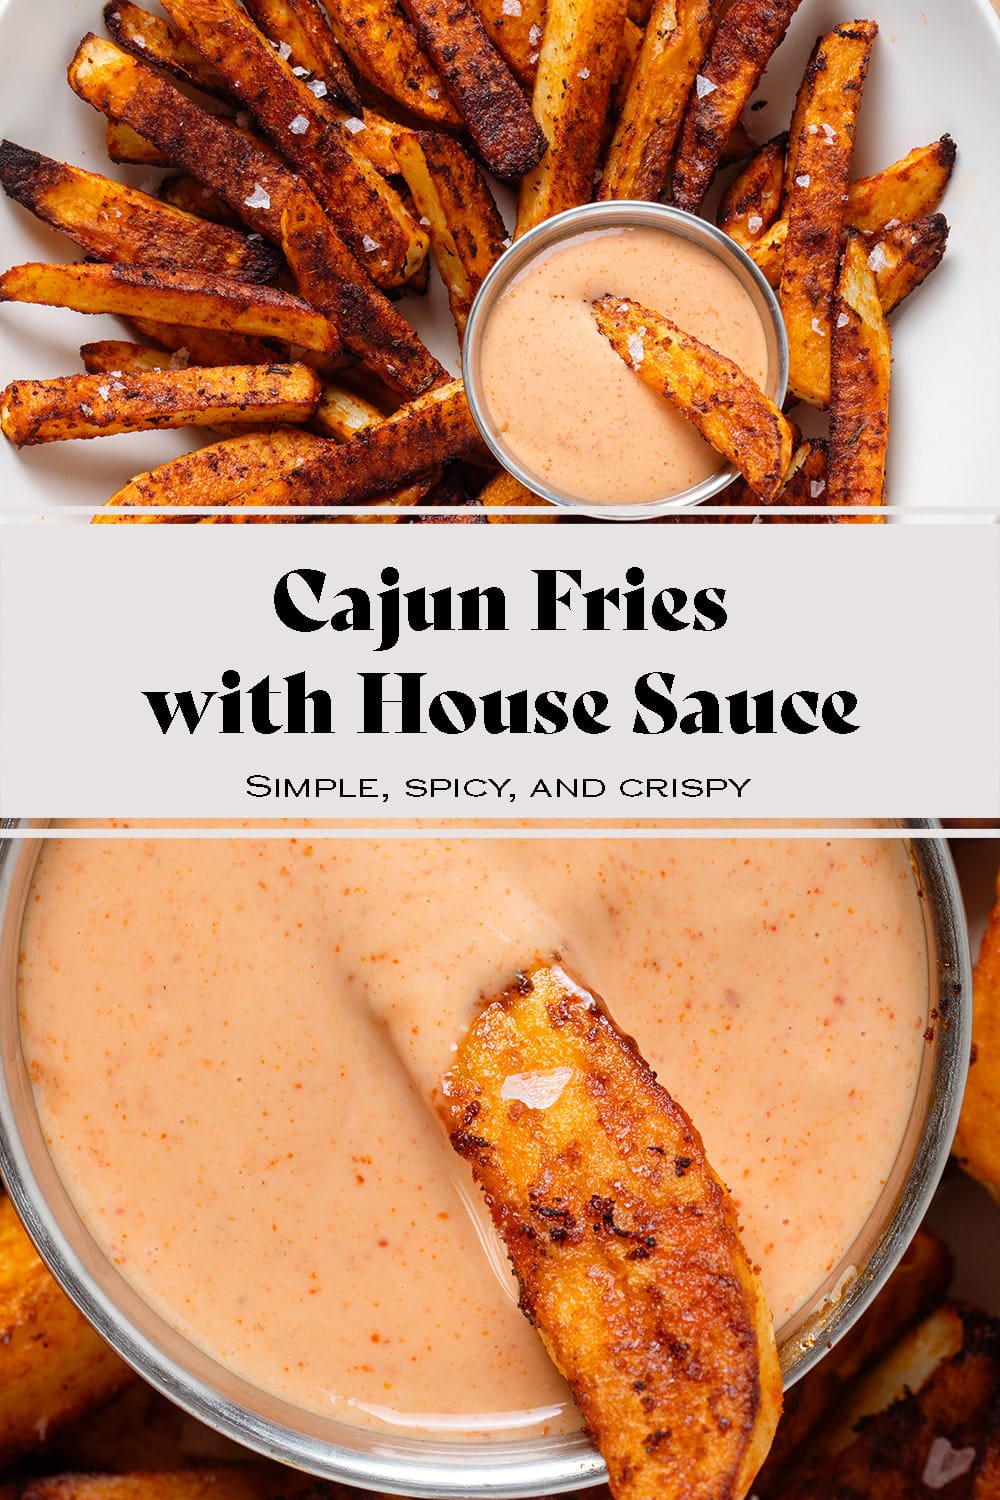 Cajun Fries with House Sauce